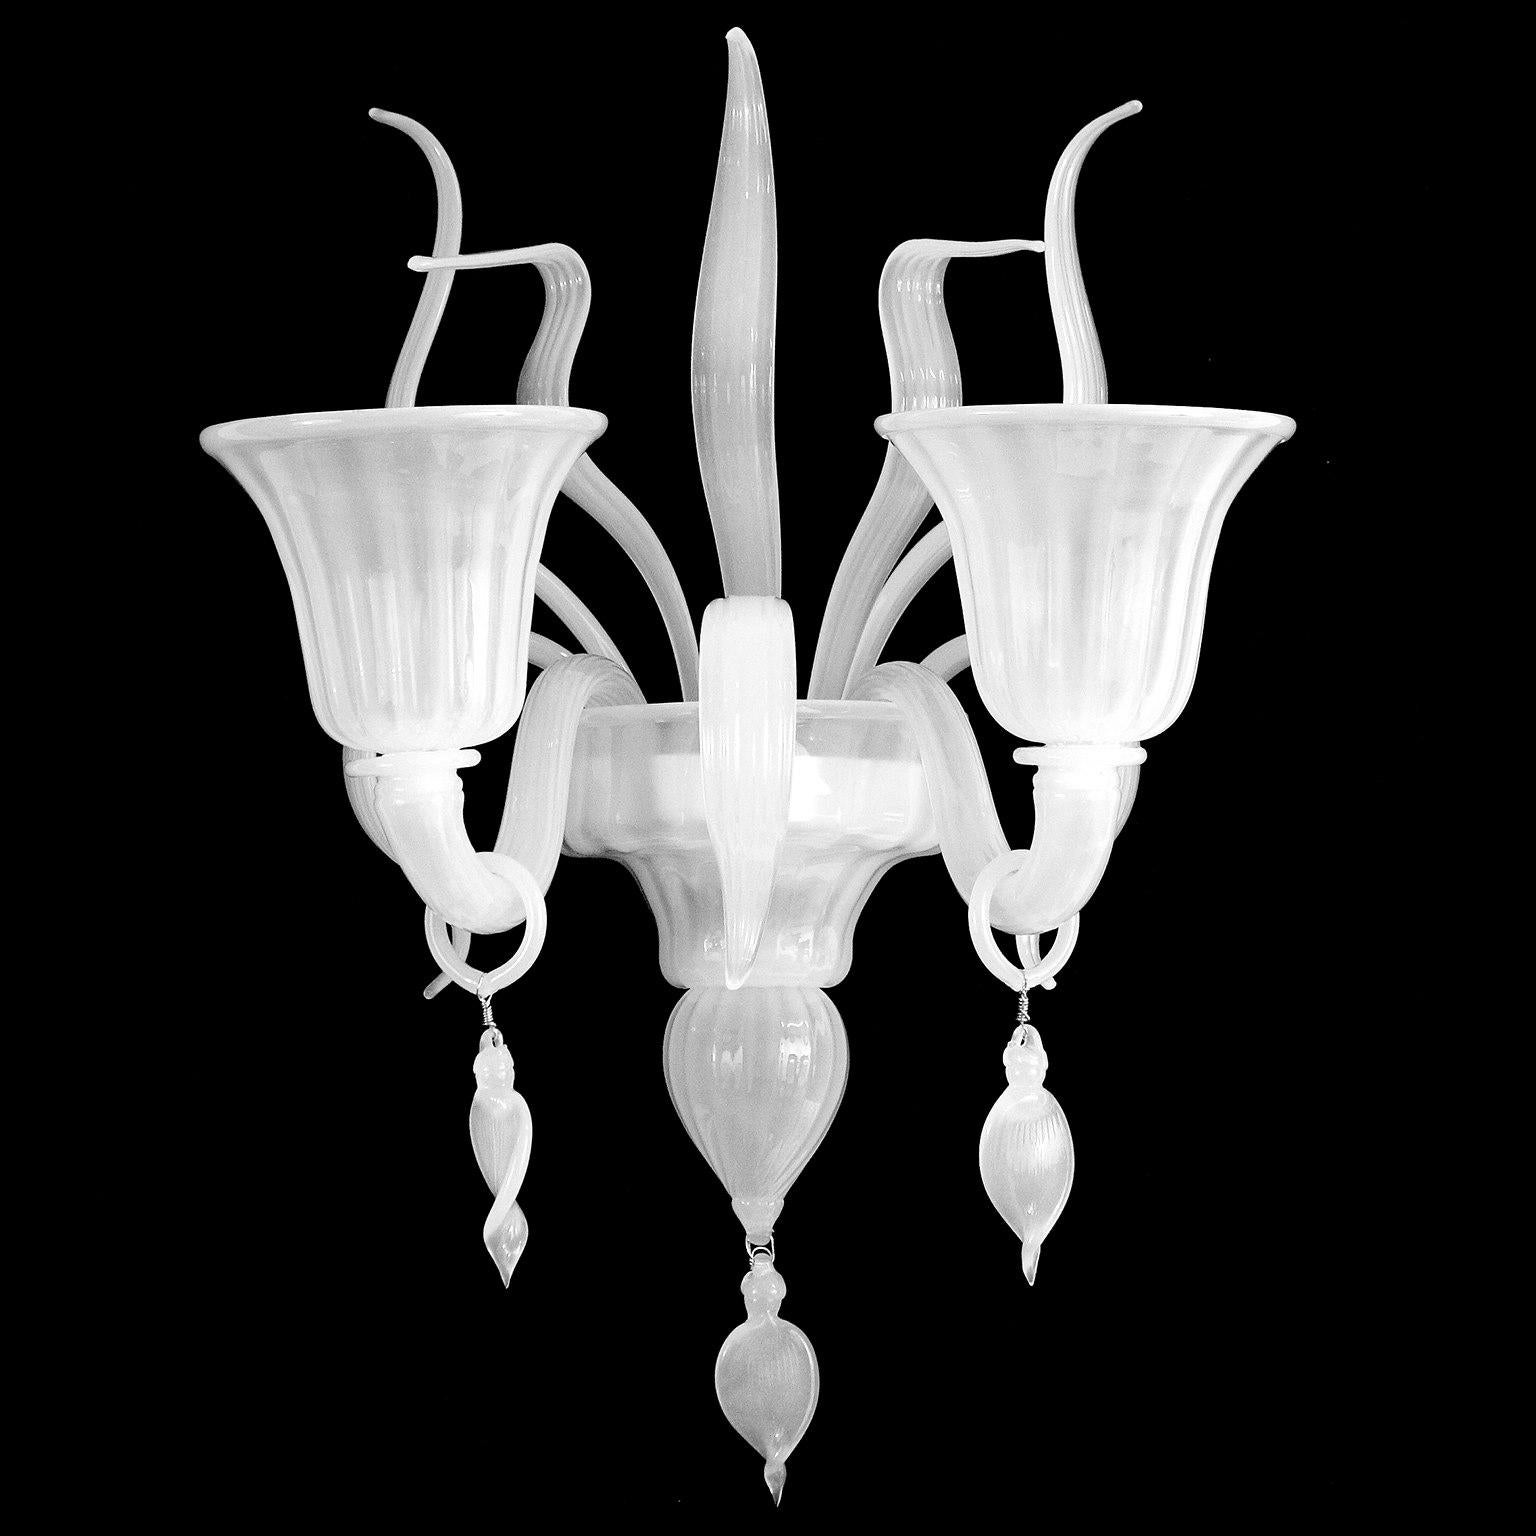 Applique 2 bras verre de Murano en soie blanche avec feuilles et pendentifs par Multiforme

La collection Fluage est la combinaison parfaite entre la tradition vénitienne et le design le plus raffiné. Pour fabriquer le lustre en verre soufflé